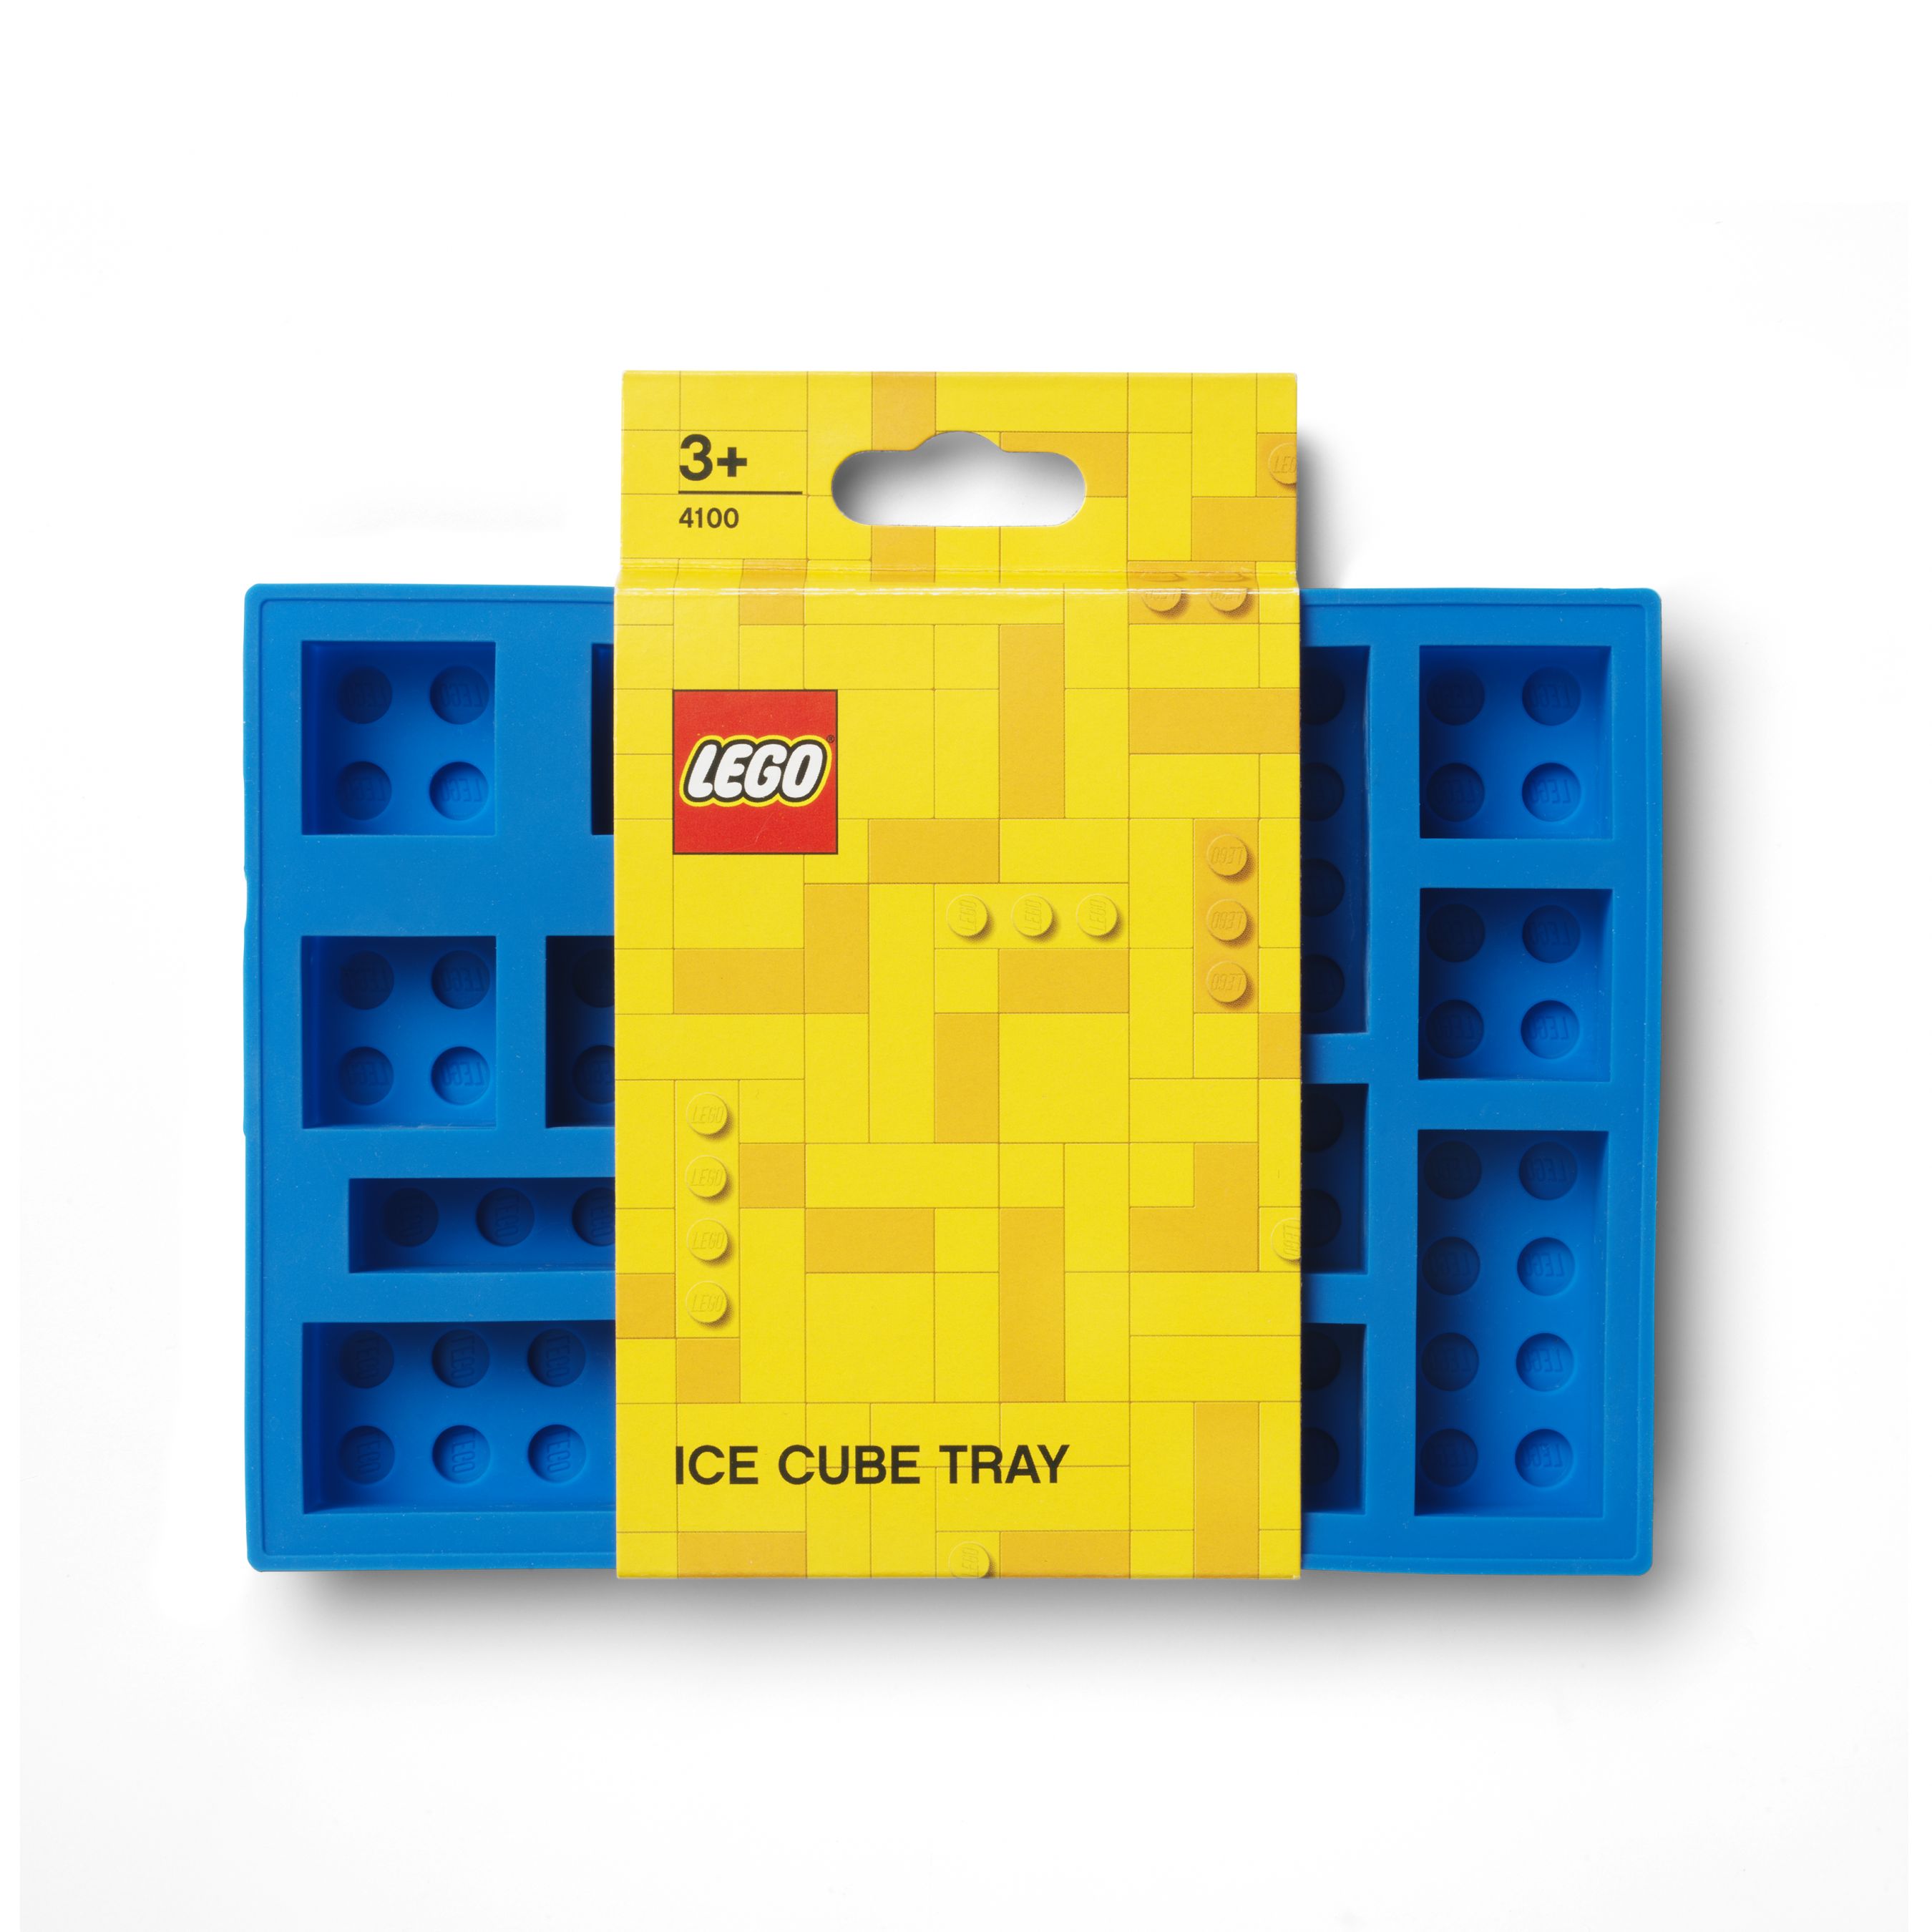 LEGO Gear 5007030 Eiswürfelform in Blau LEGO_5007030_Packaging.jpg